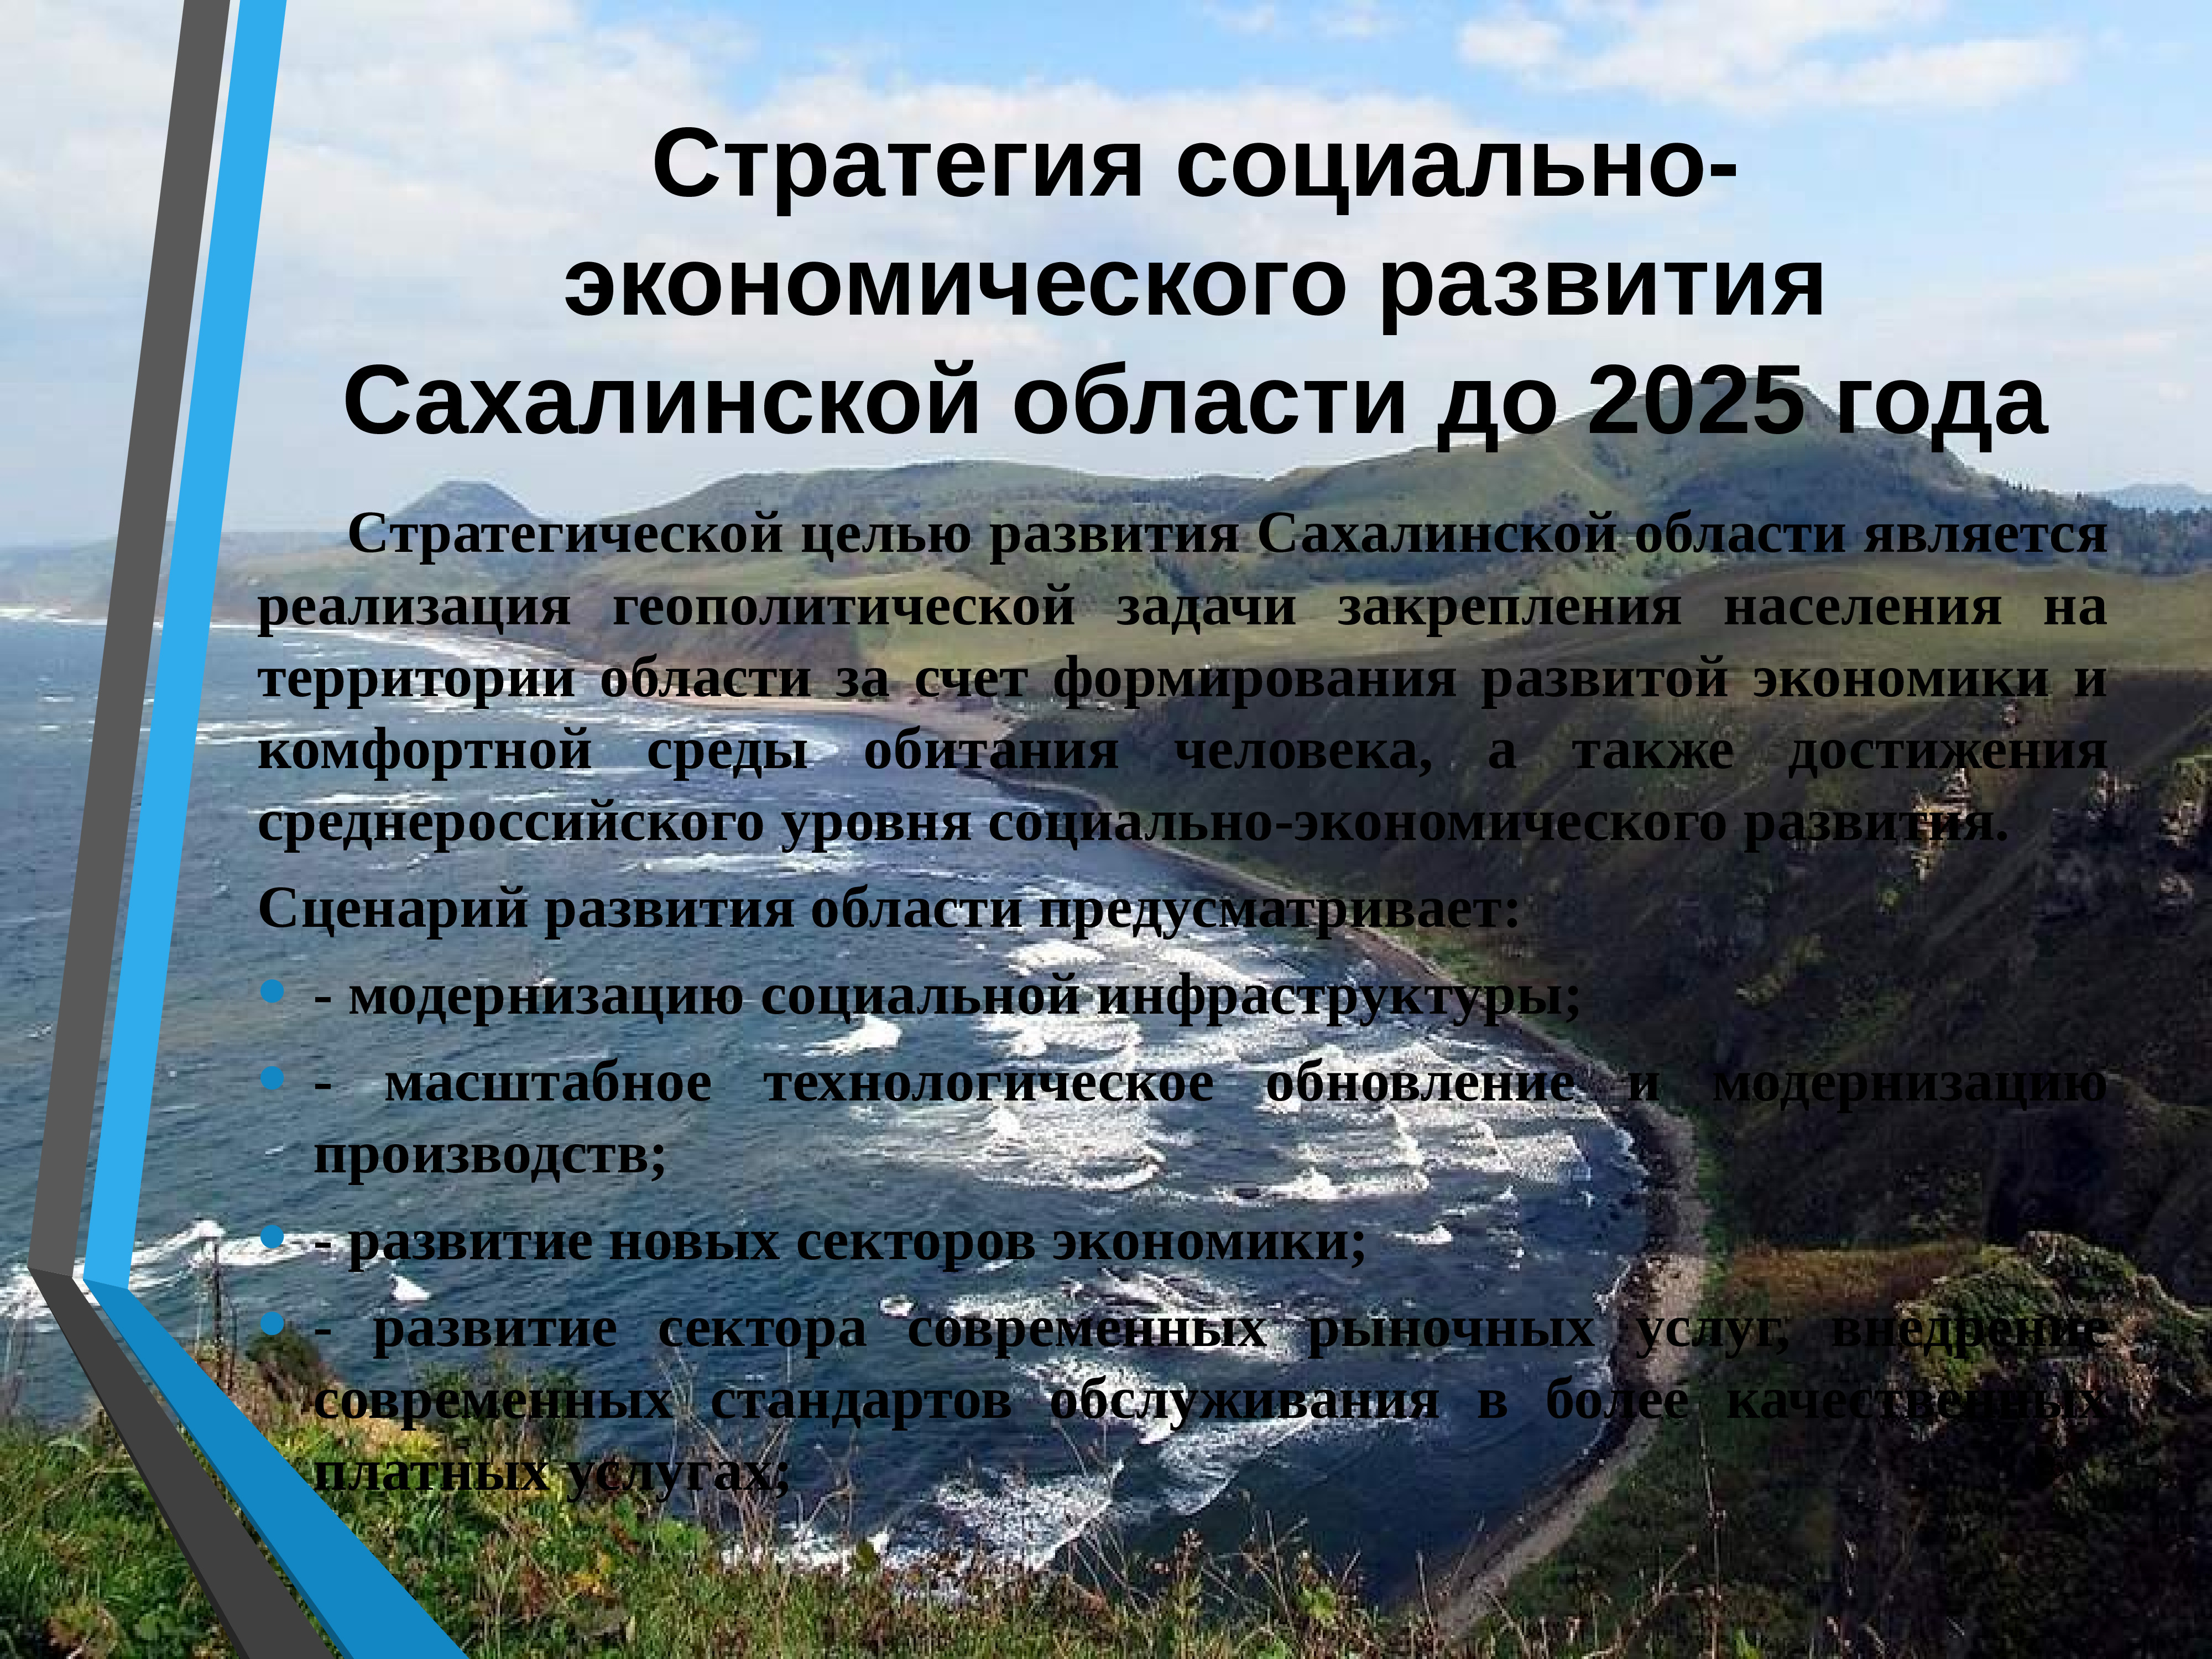 Социально-экономическое развитие Сахалинской области